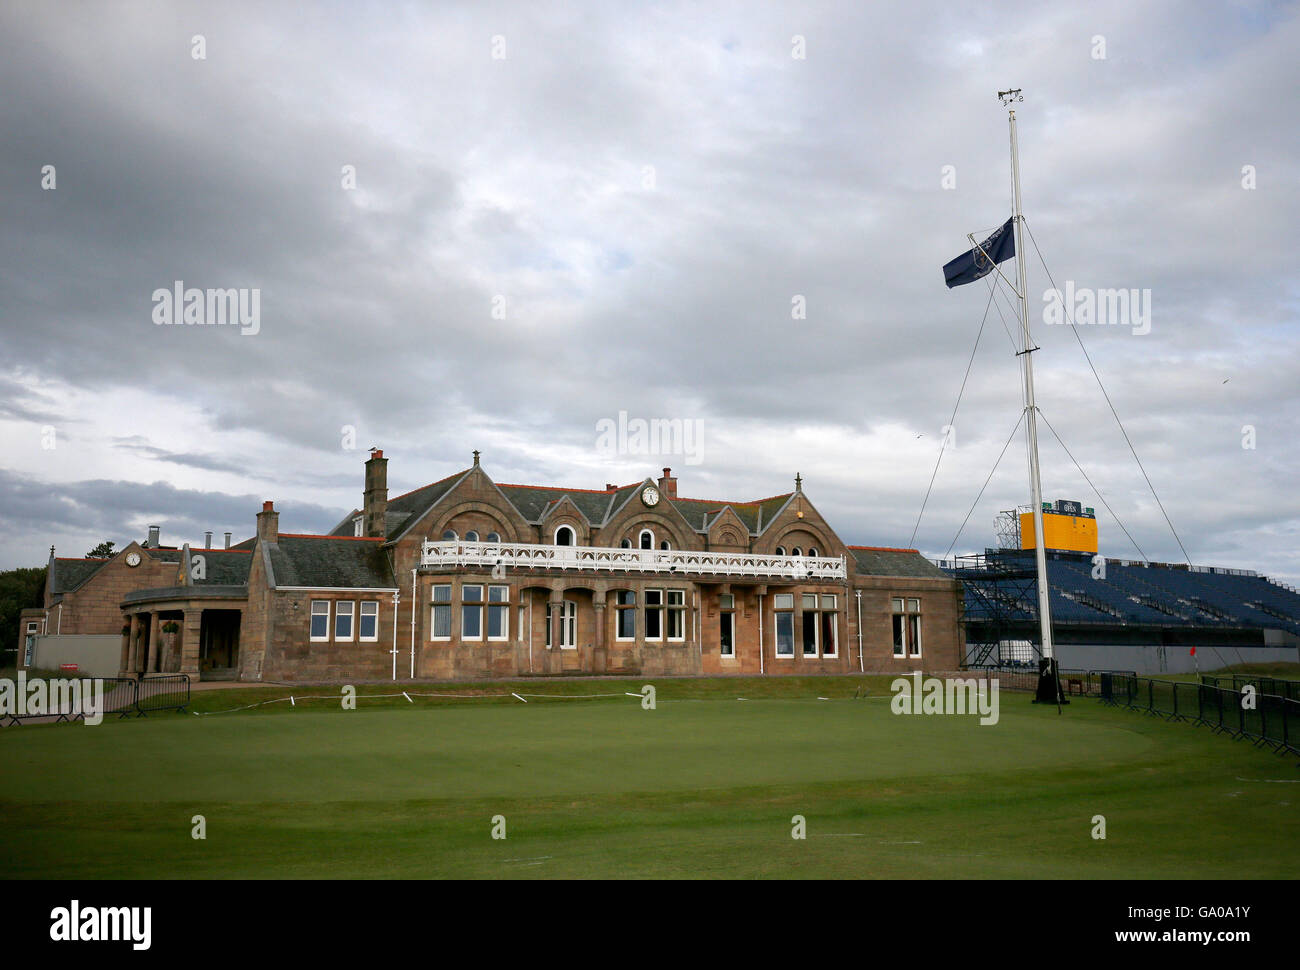 Ein Blick auf das Clubhaus im Royal Troon Golf Club in Ayrshire, als Mitglieder besuchen eine spezielle Hauptversammlung des Vereins nur für Männer Mitgliederpolitik abstimmen. Stockfoto